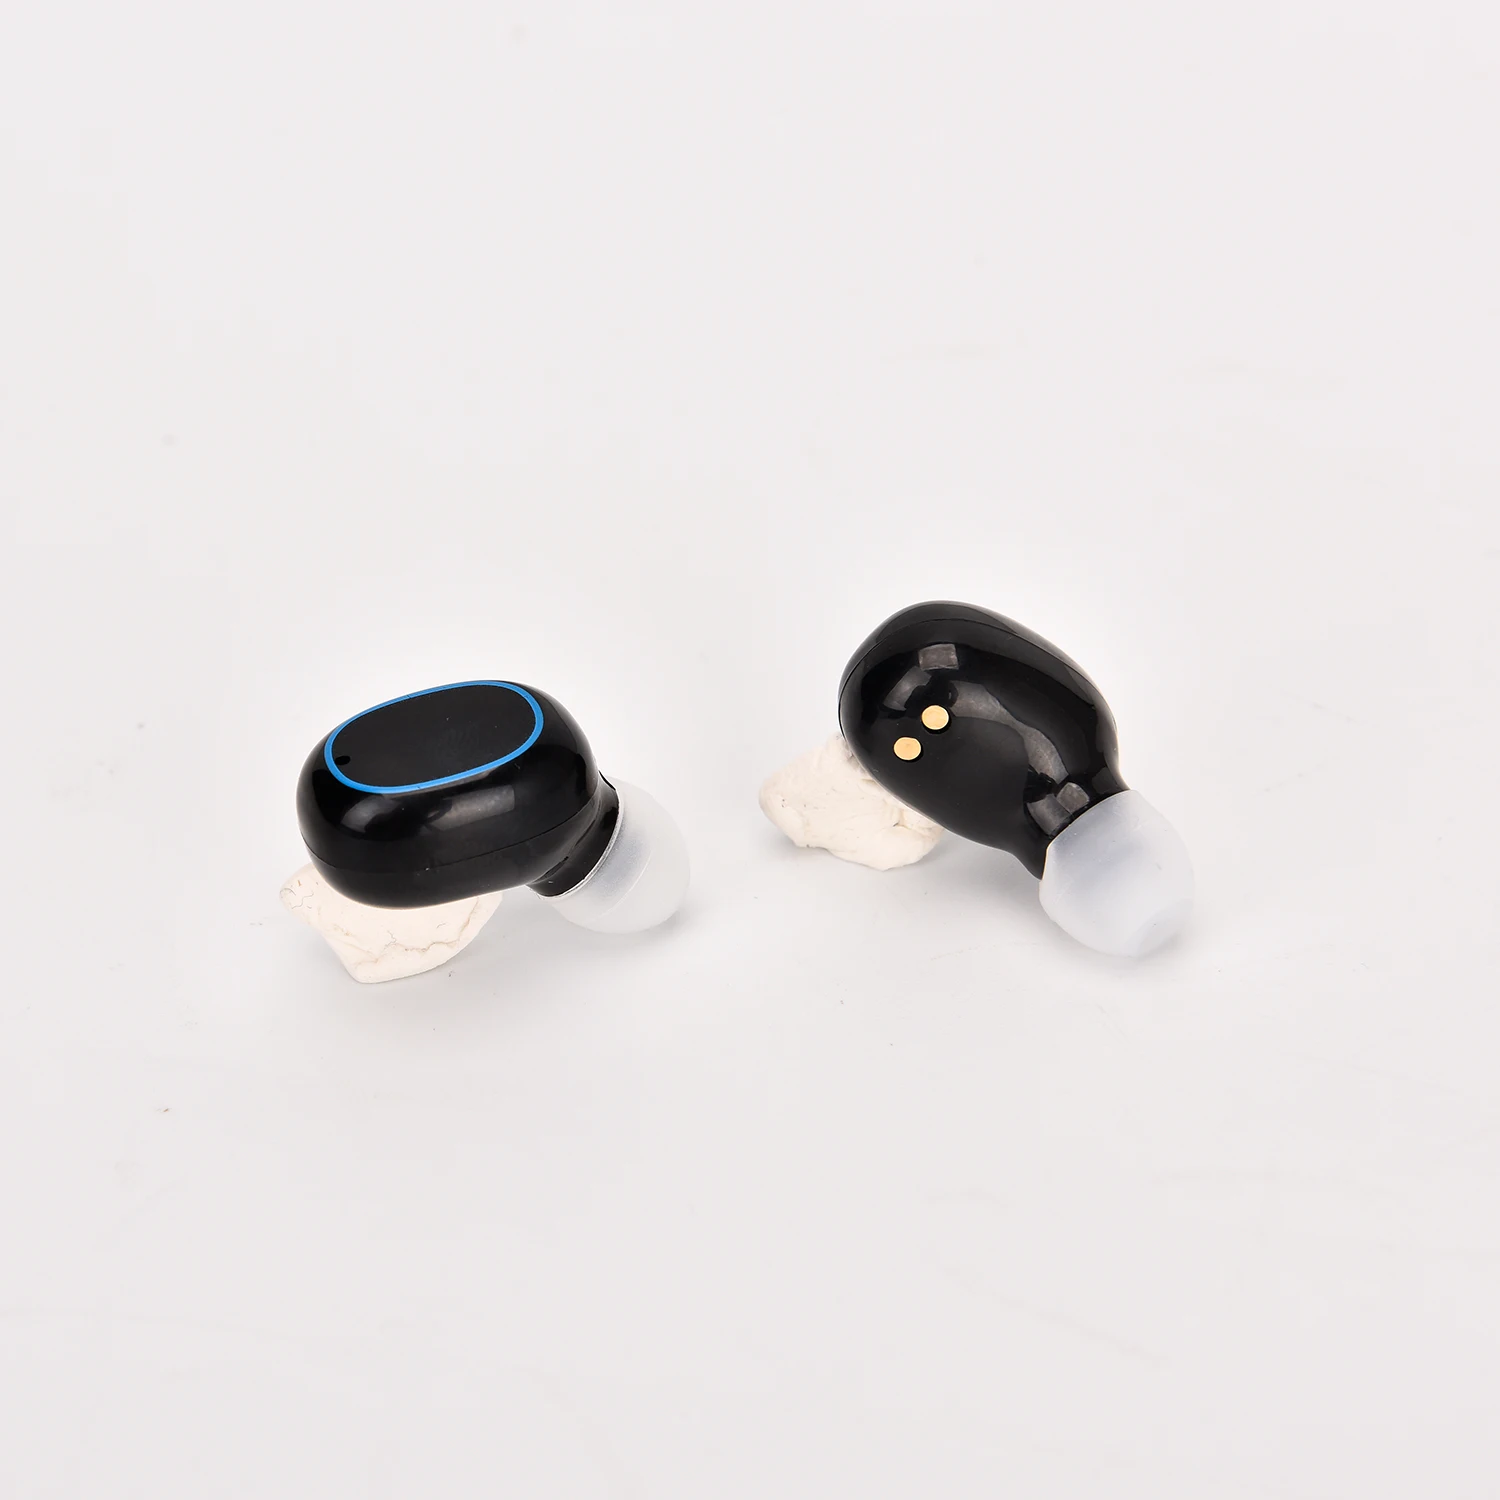 A2 беспроводные Bluetooth наушники TWS беспроводные ушные вкладыши Сенсорная технология наушник шумоподавление 1500 мАч Пробуждение Siri